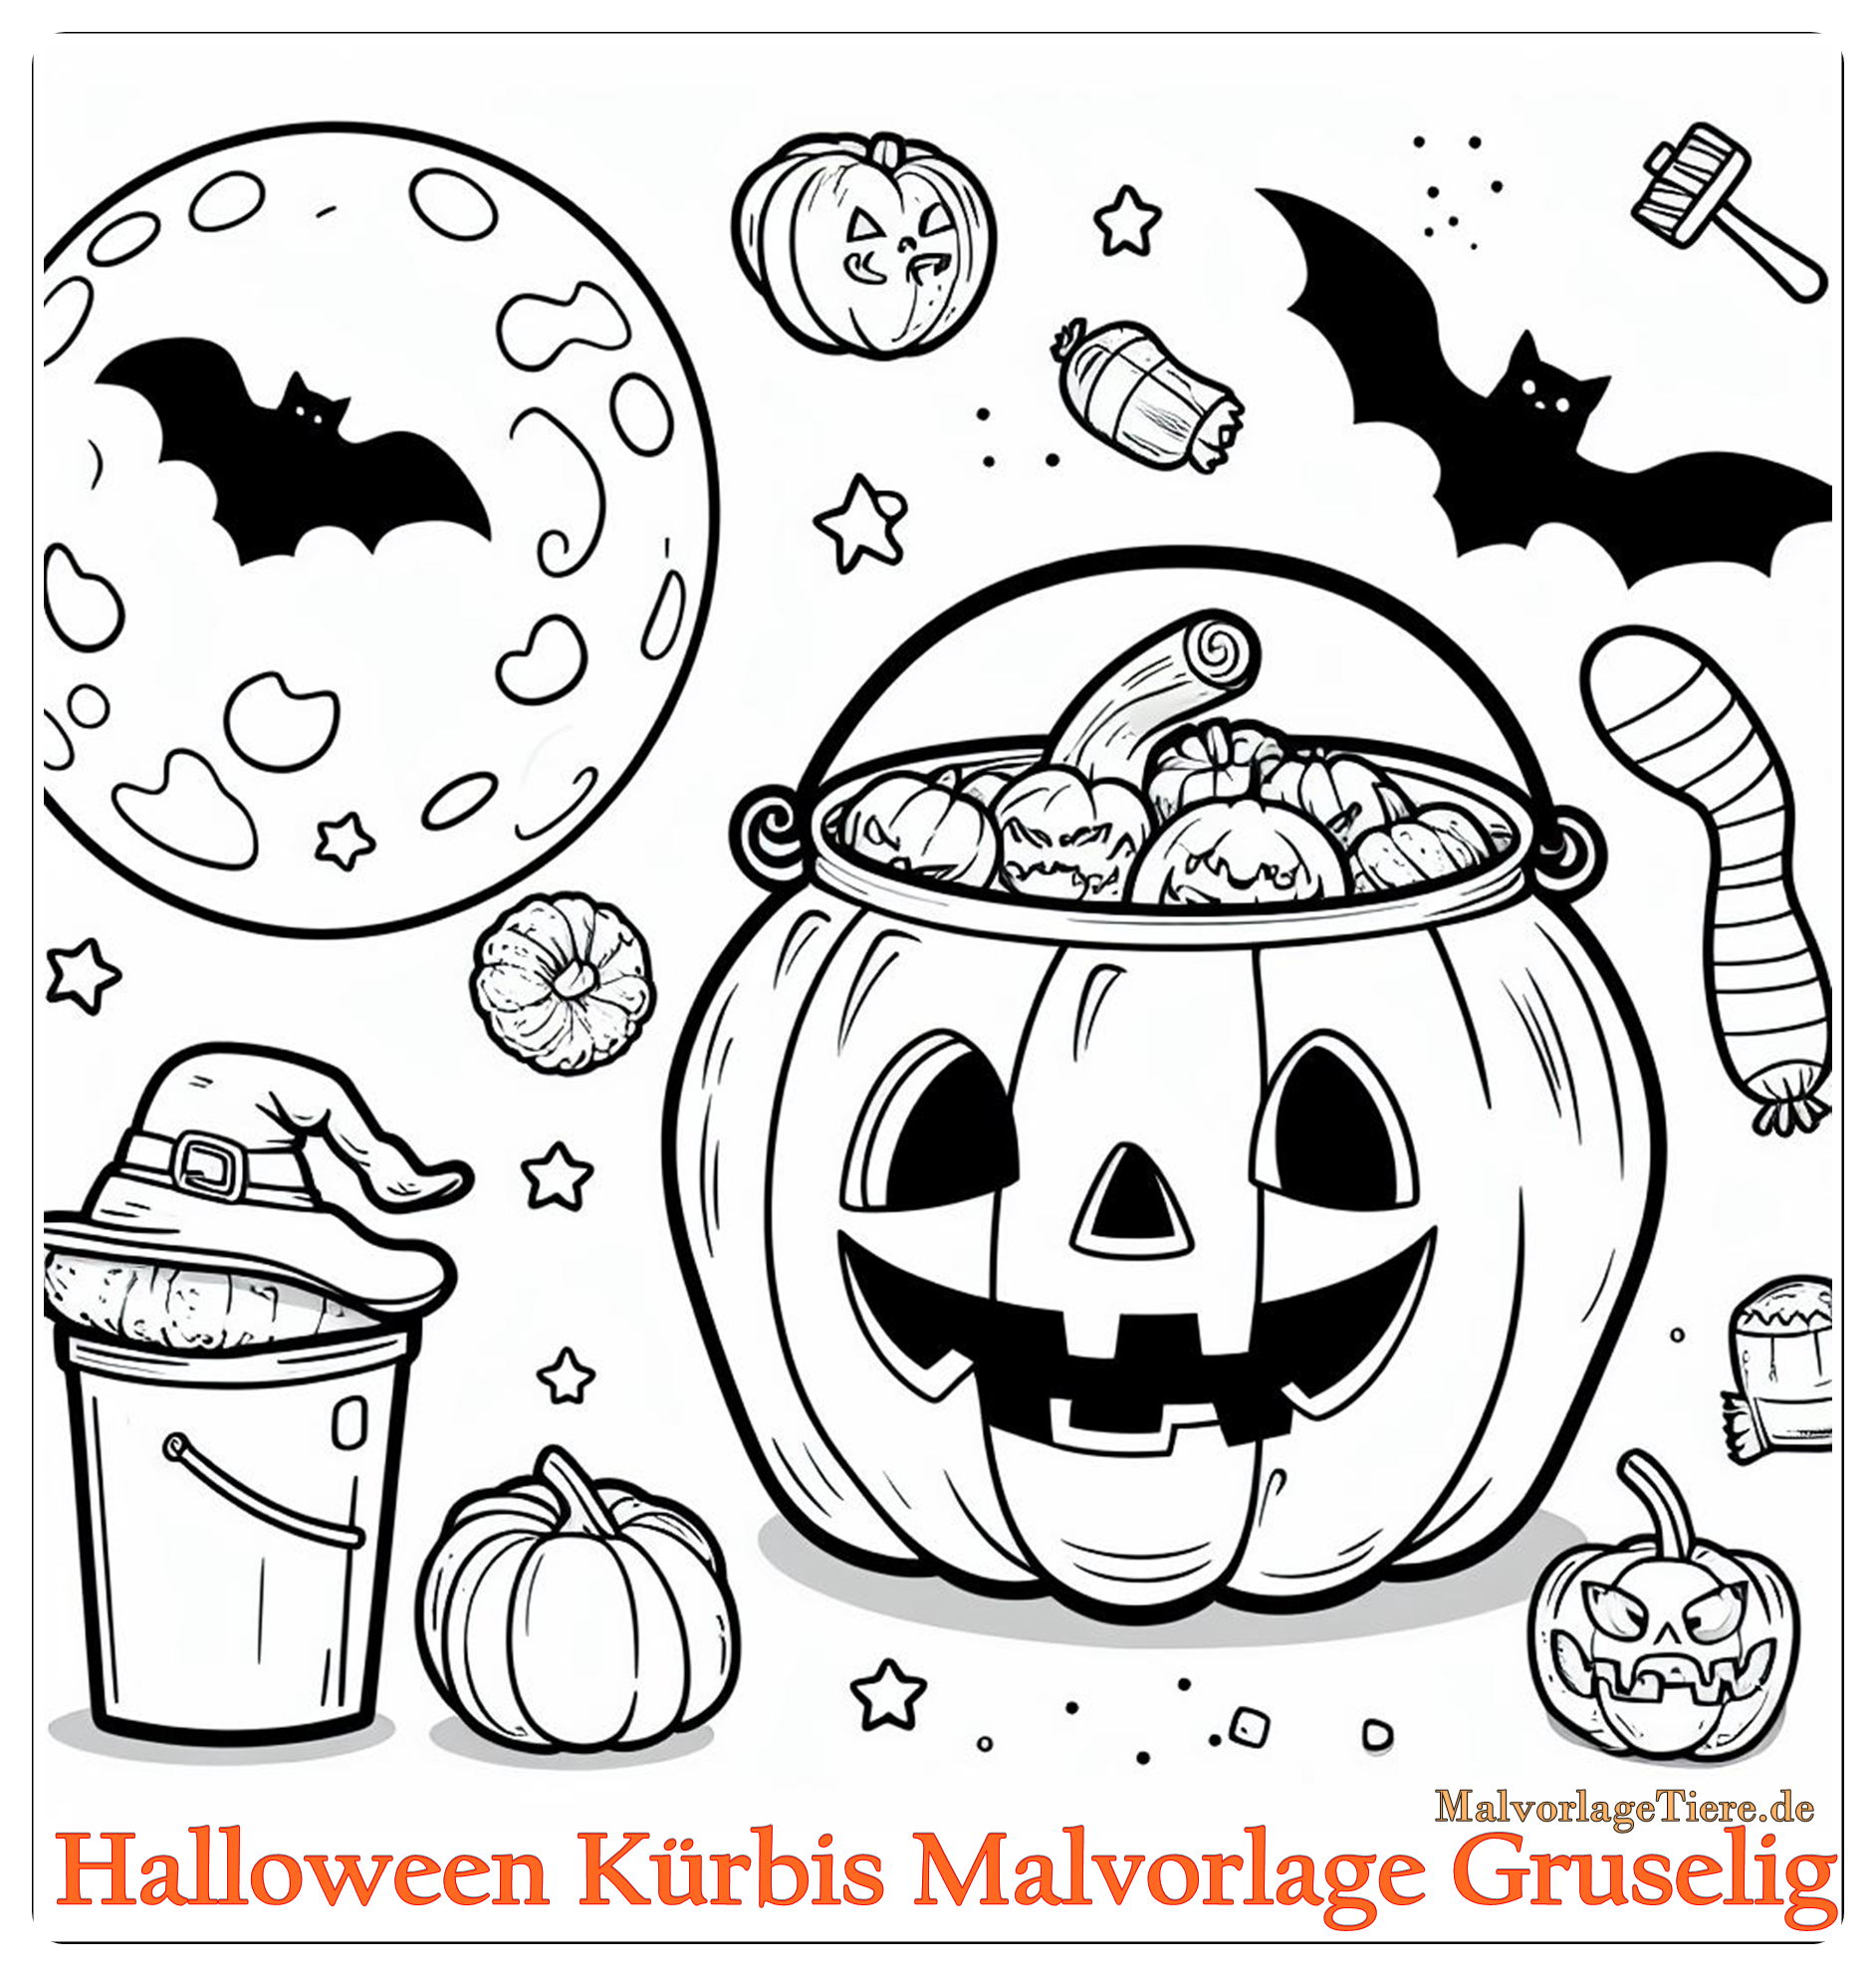 Halloween Kürbis Malvorlage Gruselig 04 by malvorlagetiere.de